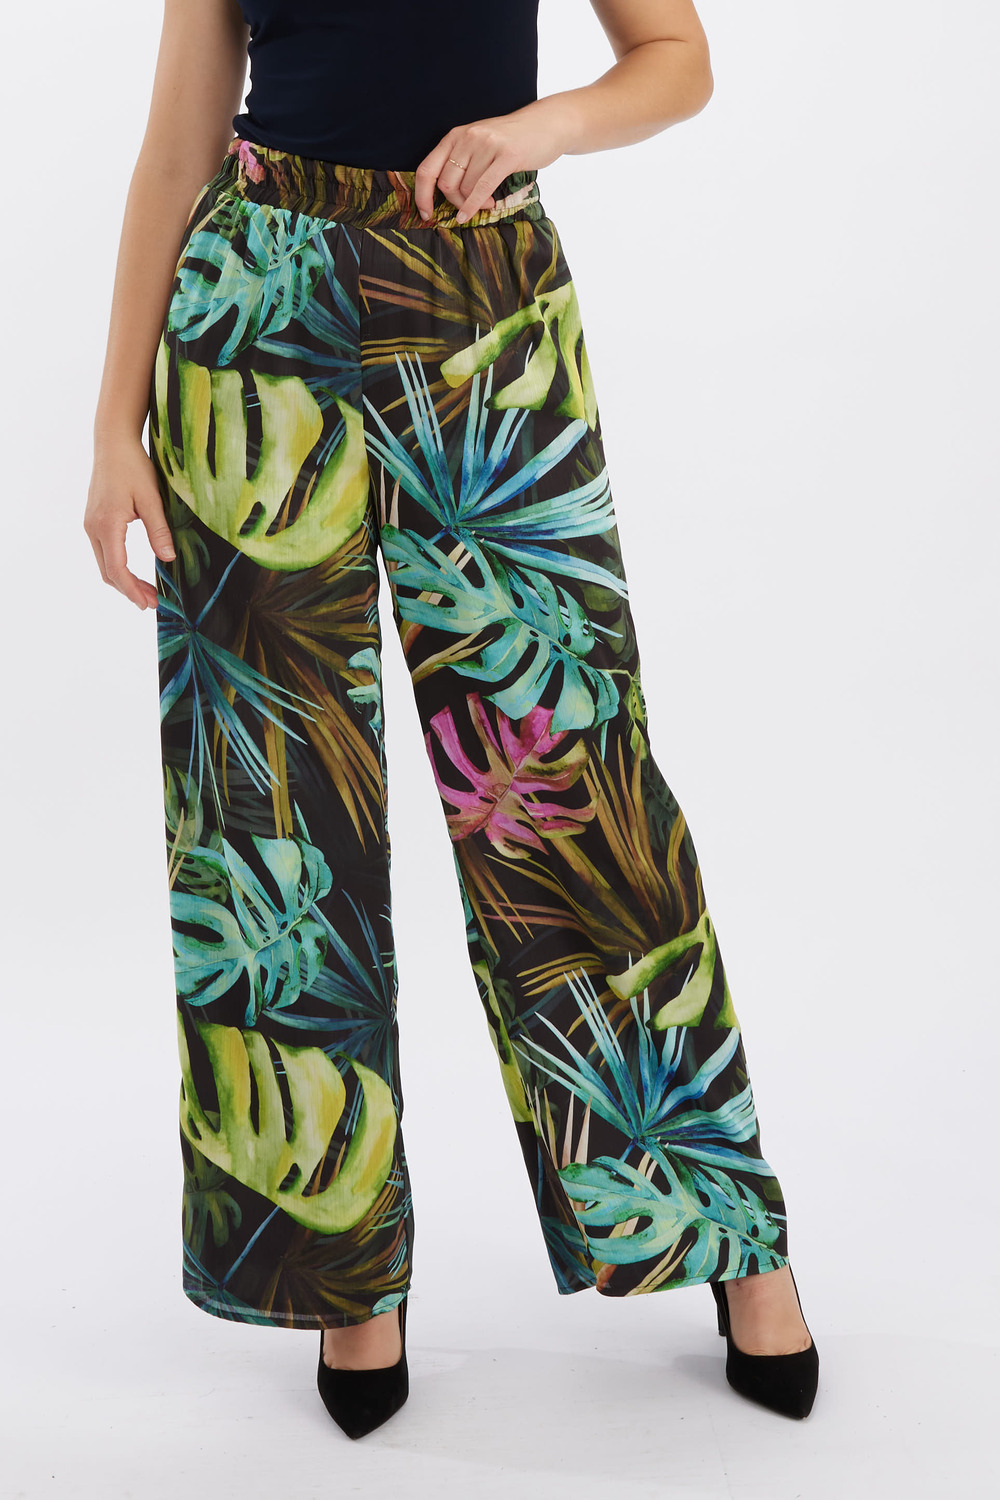 Tropical Print Wide Leg Pants Style 246470. Black/multi